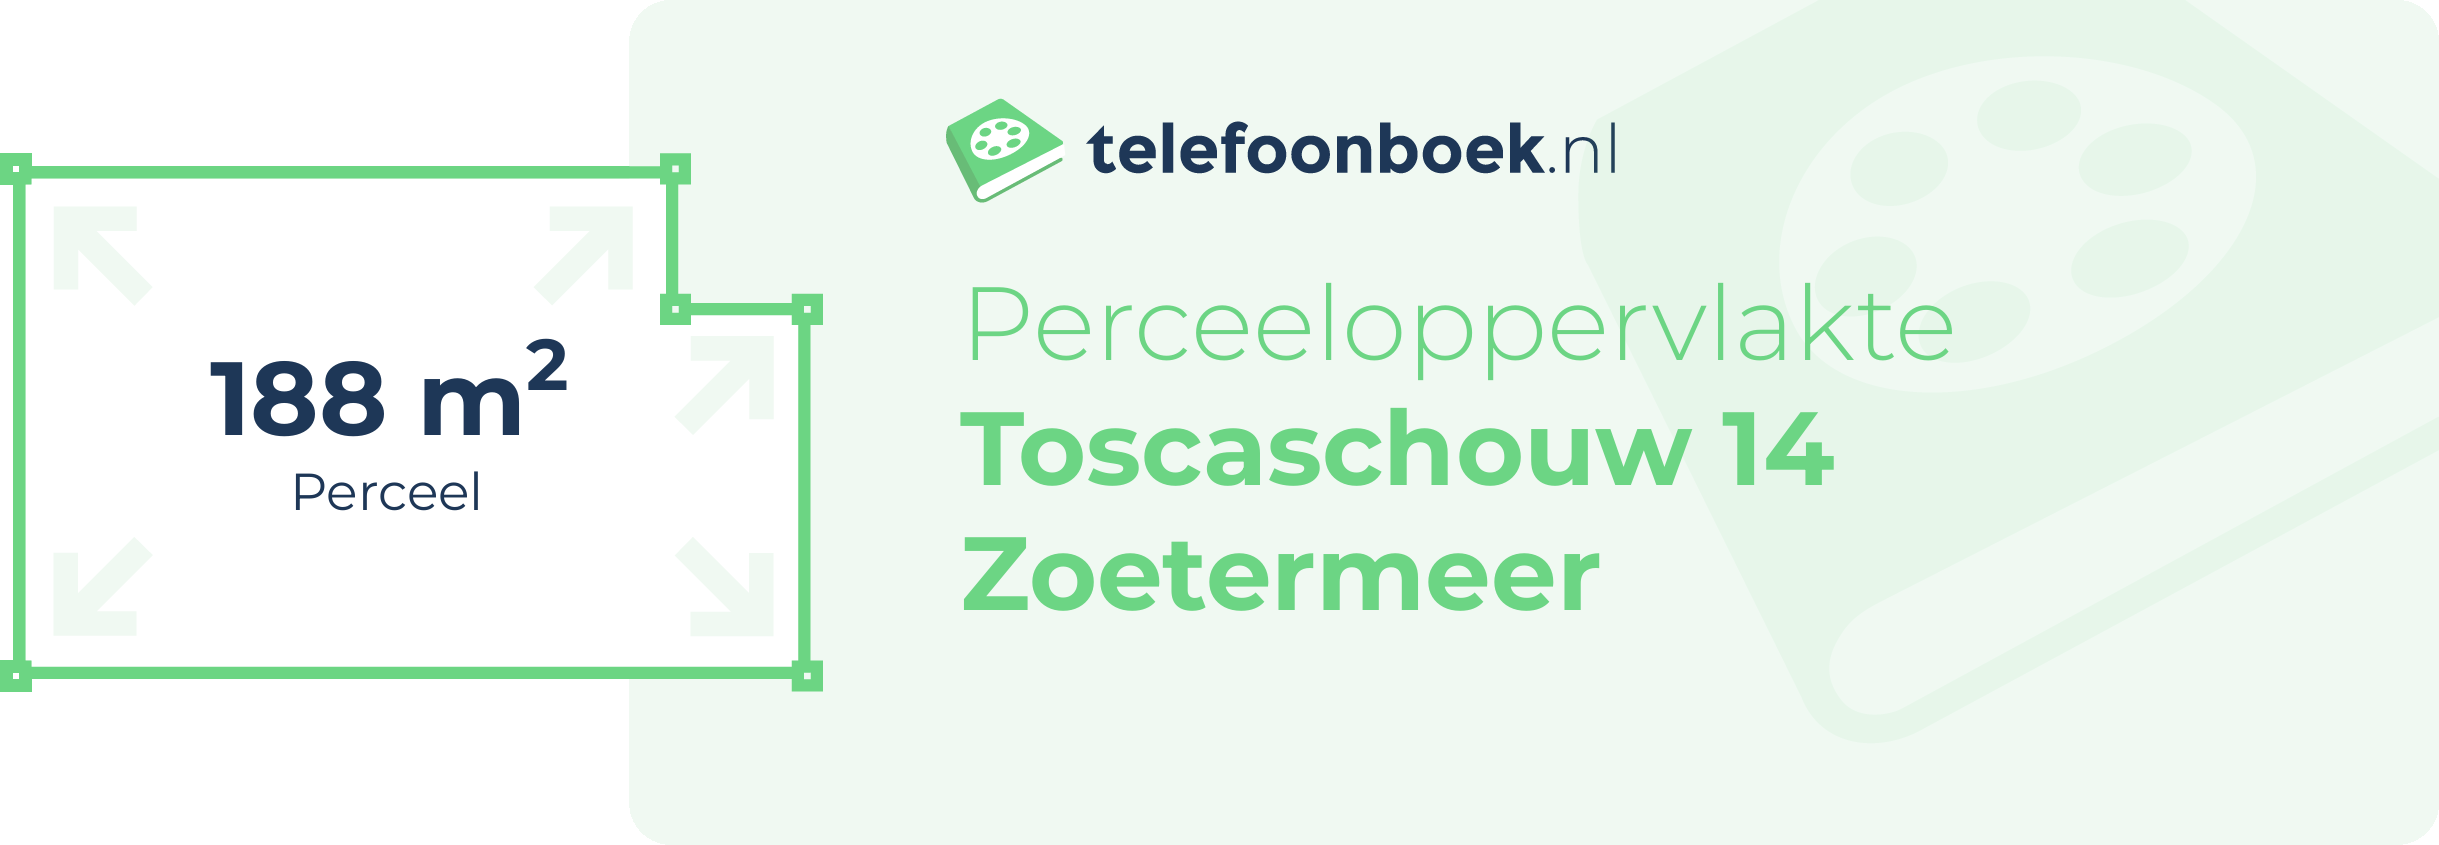 Perceeloppervlakte Toscaschouw 14 Zoetermeer